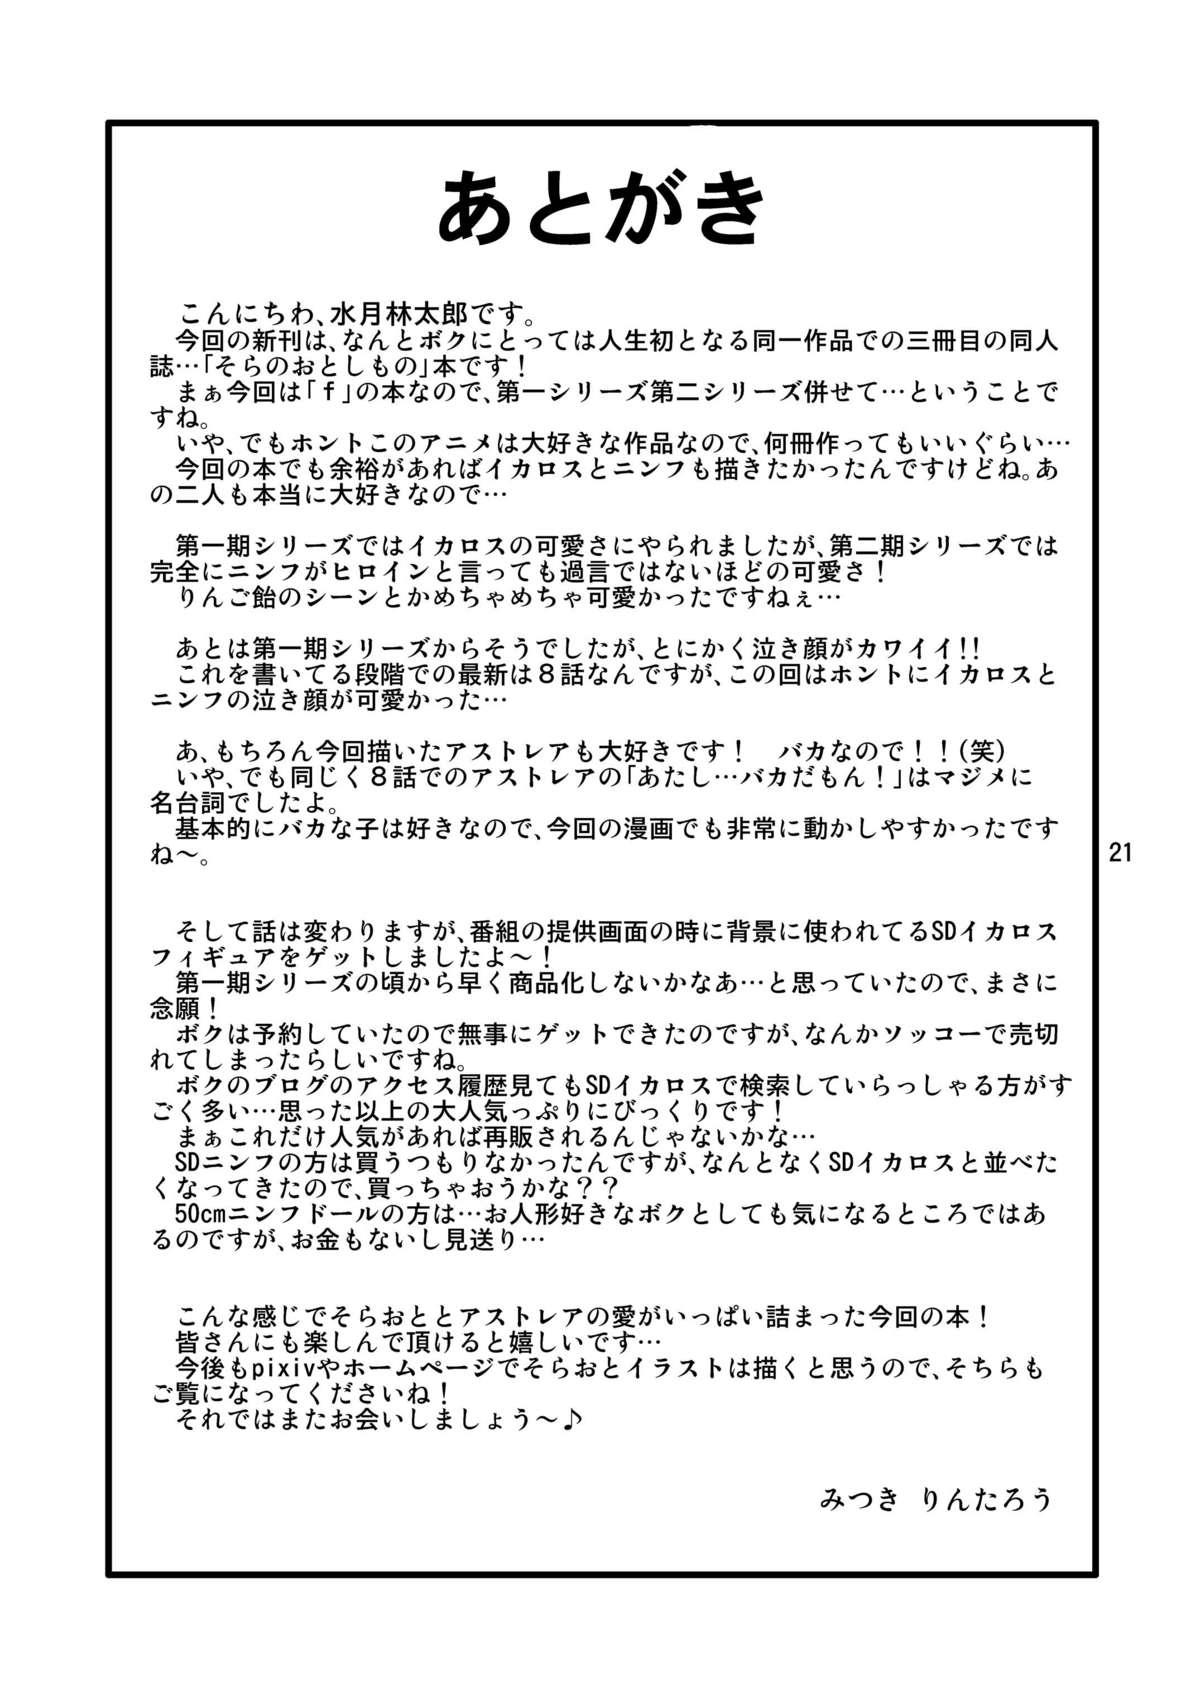 Ejaculation Oshiri no Tanima ni Insert!! - Sora no otoshimono Stepsis - Page 21